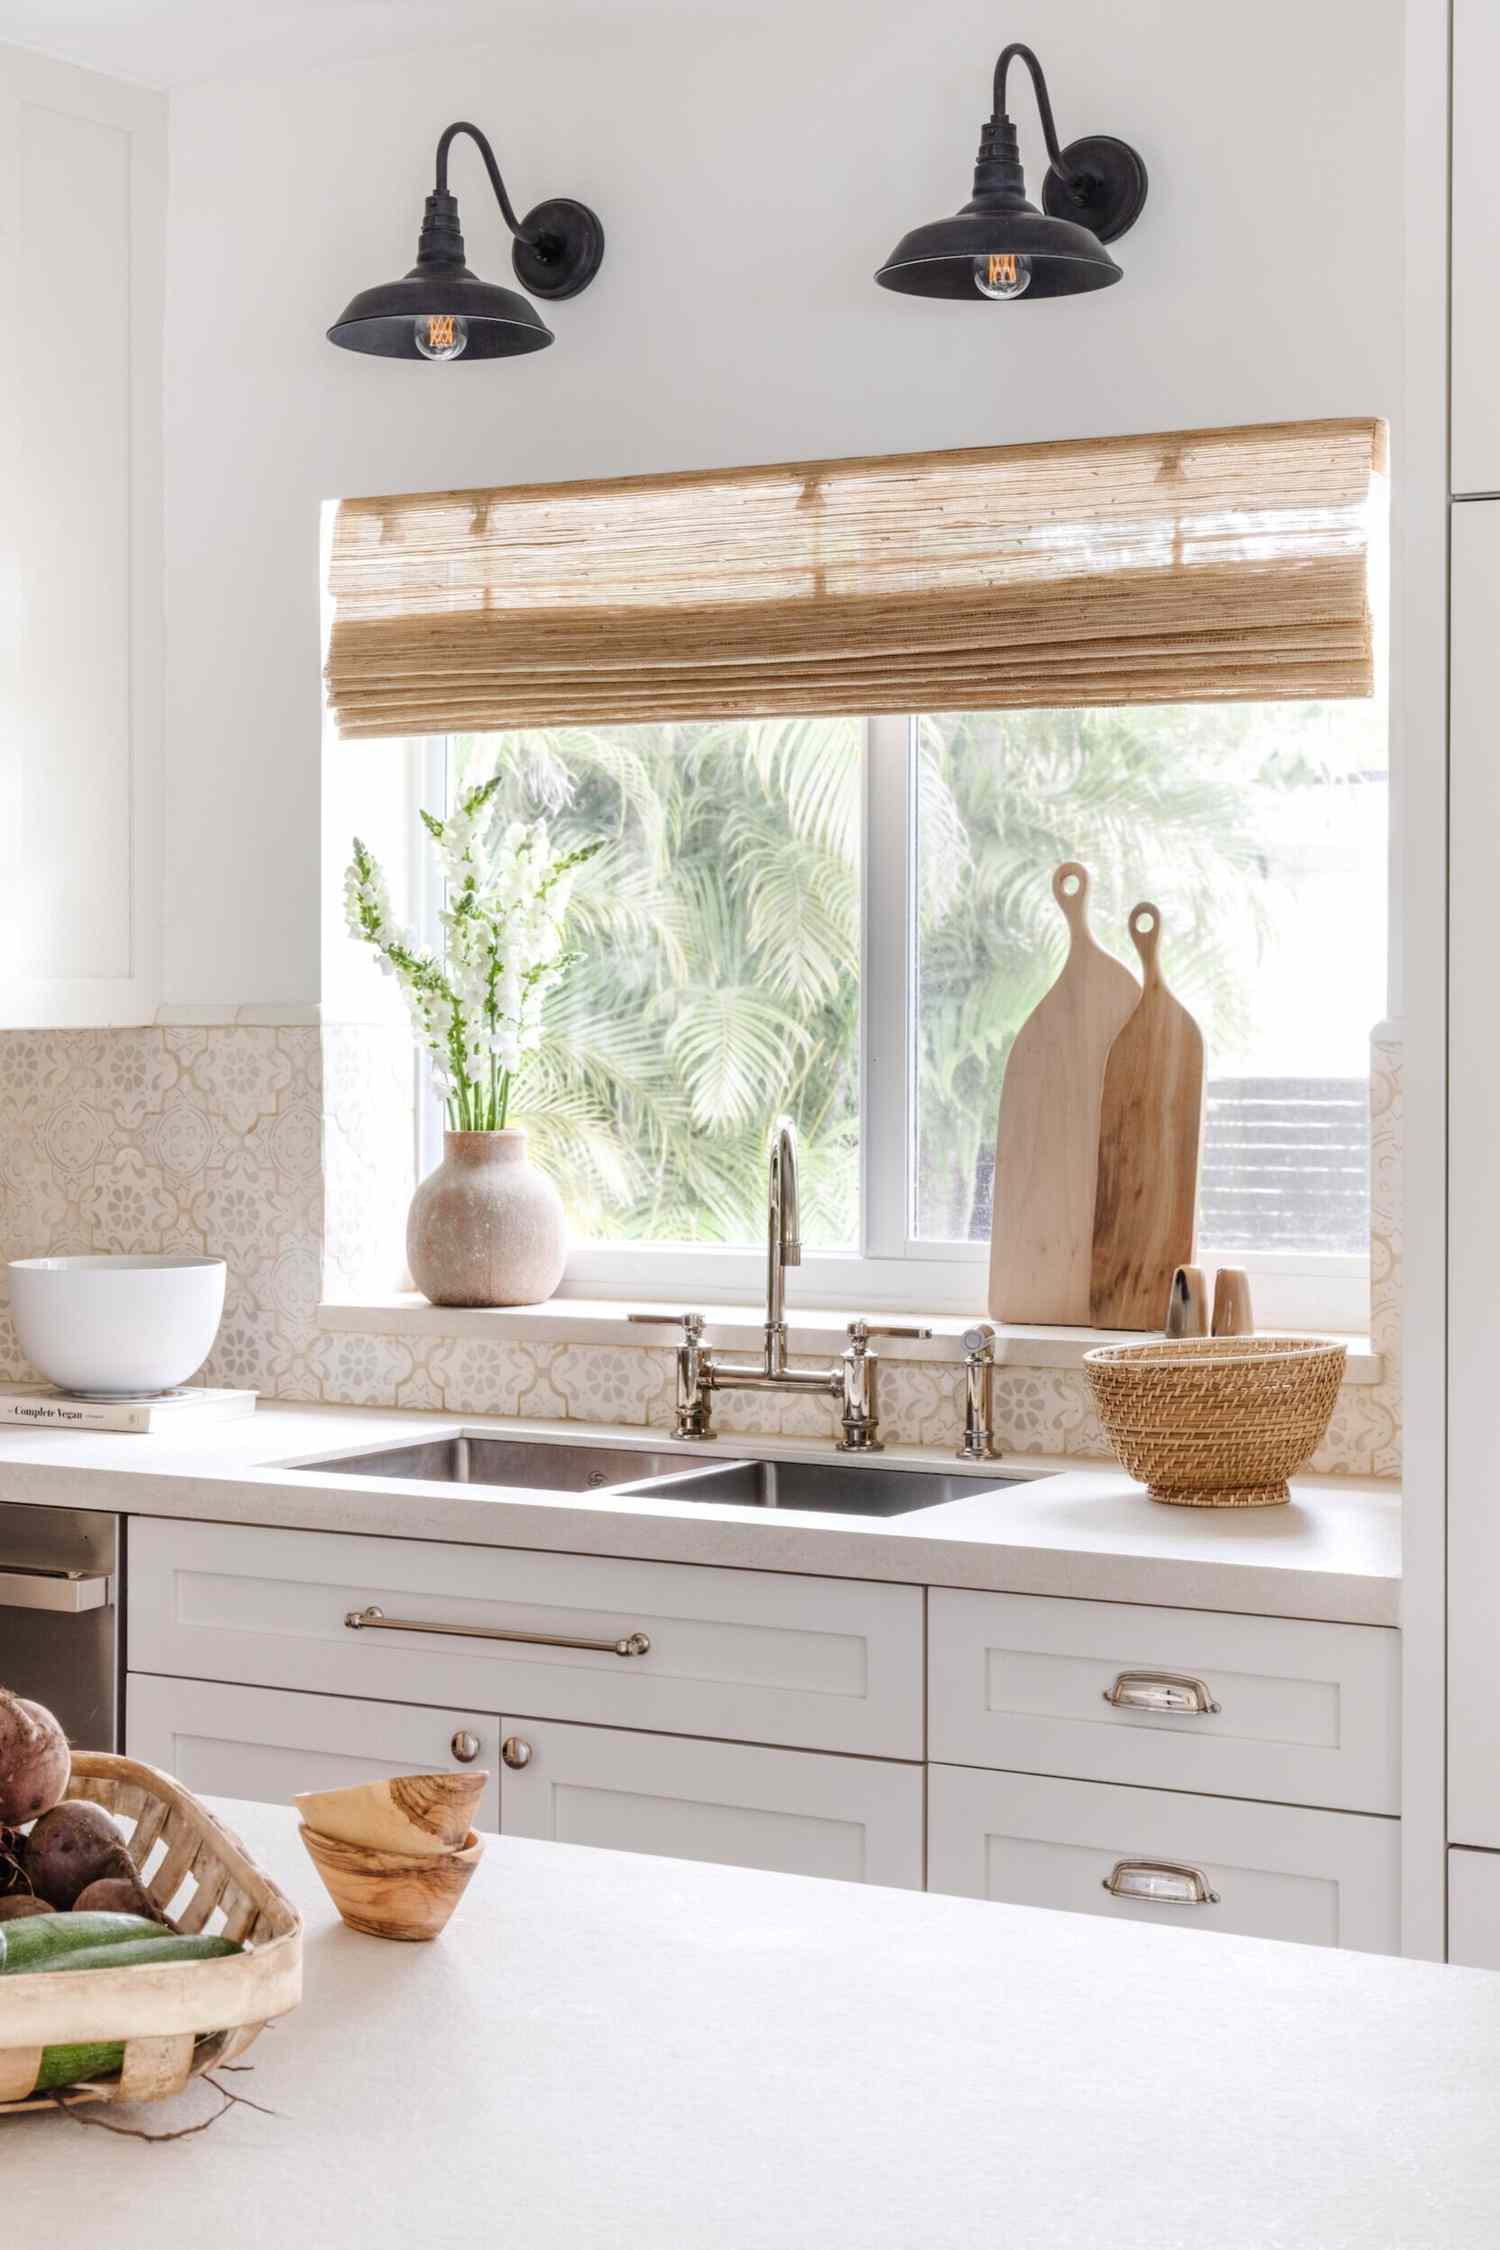 ventana del fregadero de la cocina con persiana tejida